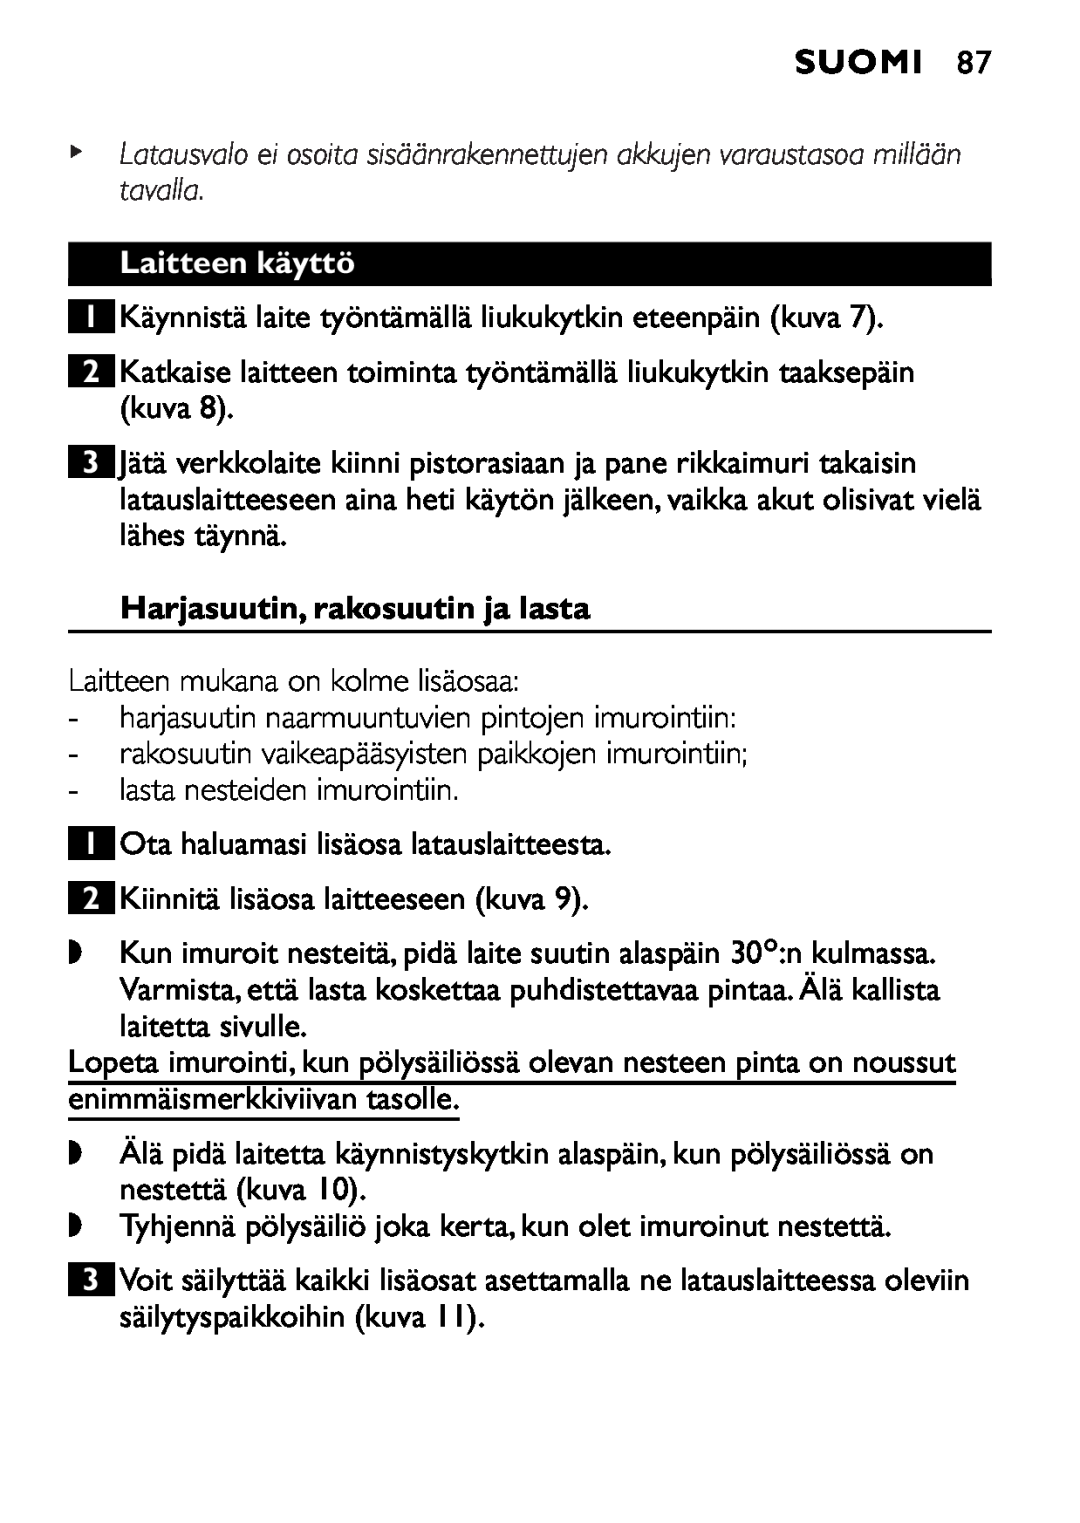 Philips FC6055 manual Suomi, Laitteen käyttö, Harjasuutin, rakosuutin ja lasta 